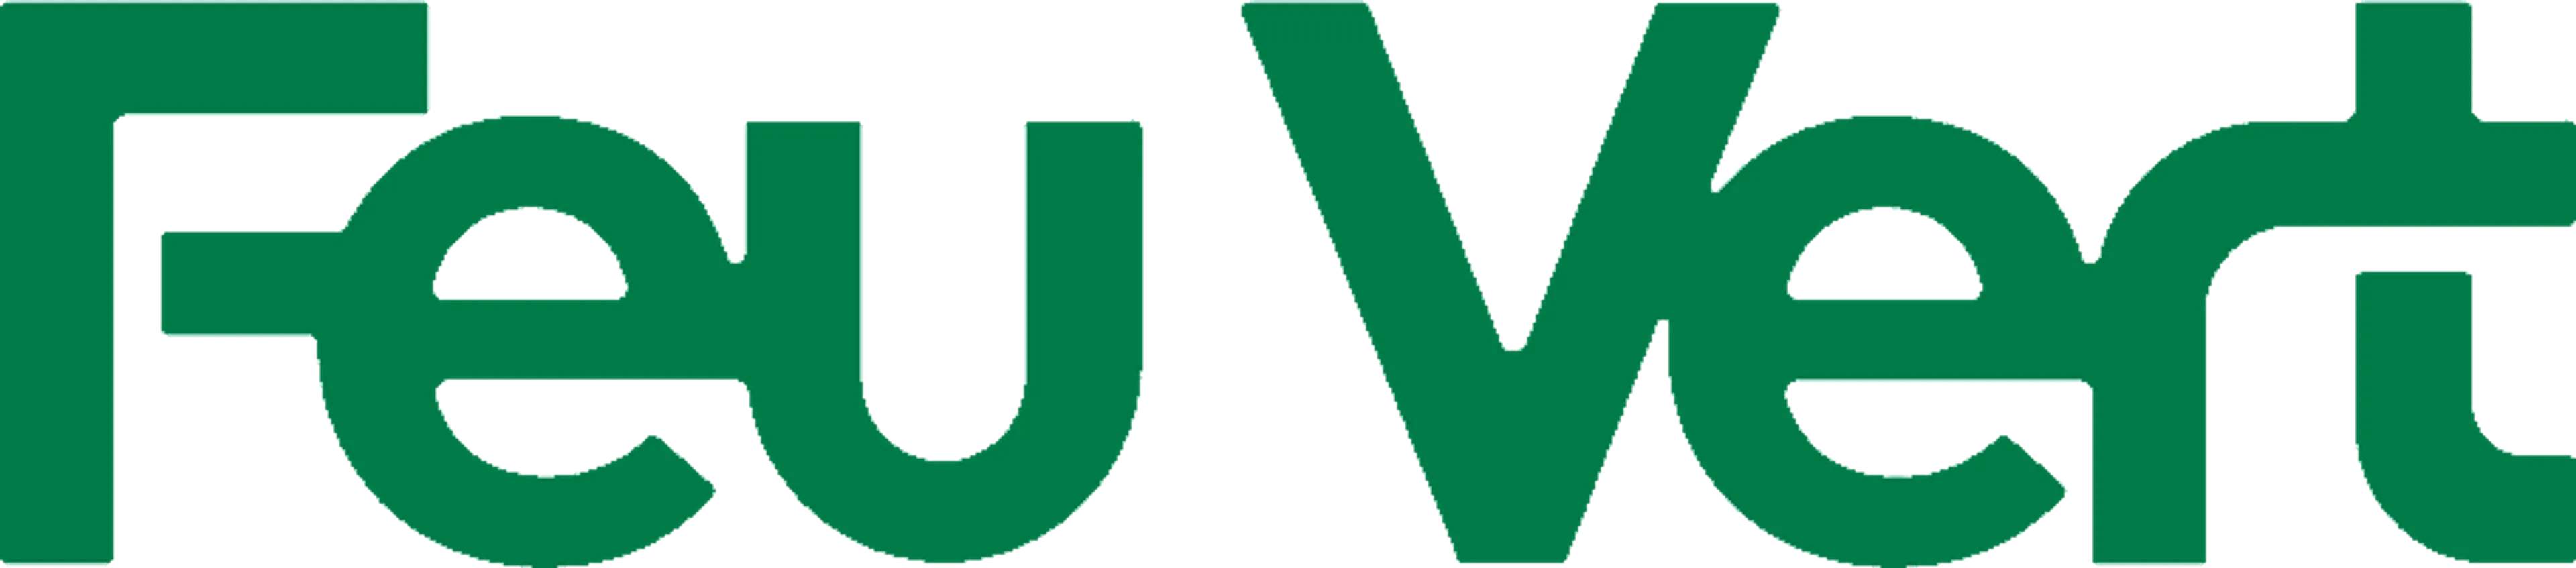 FEUVERT logo